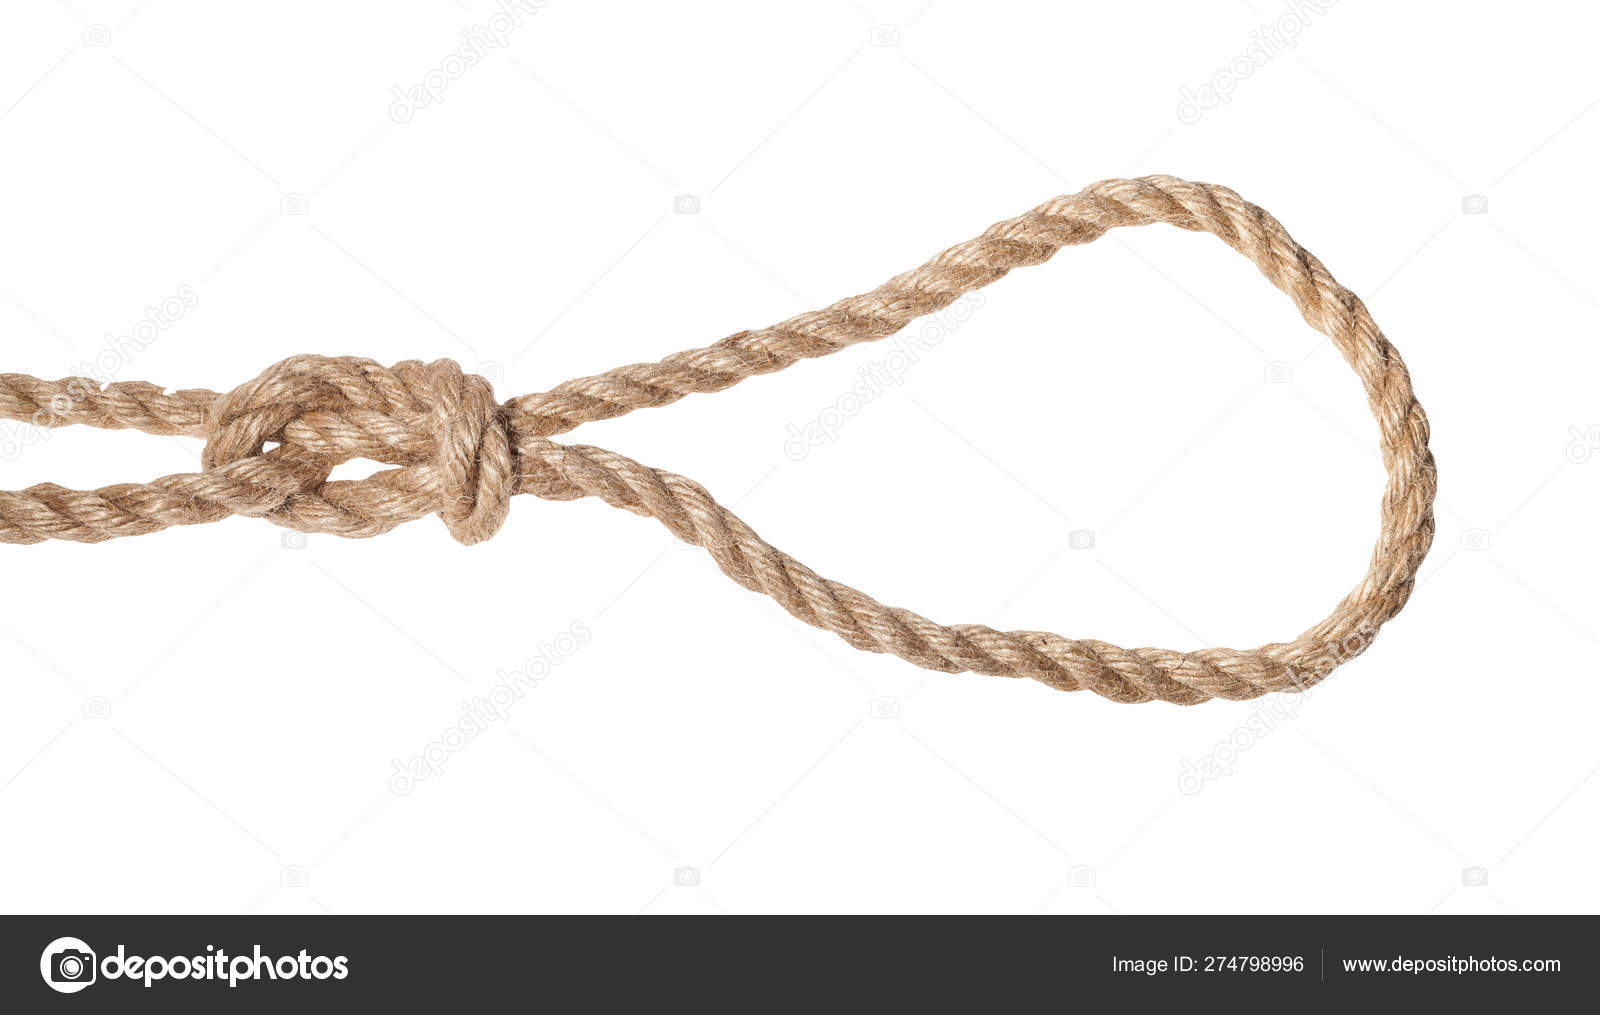 Figura deslizada-ocho nudo de soga atado en la cuerda del yute — Foto de  stock #274798996 © vvoennyy